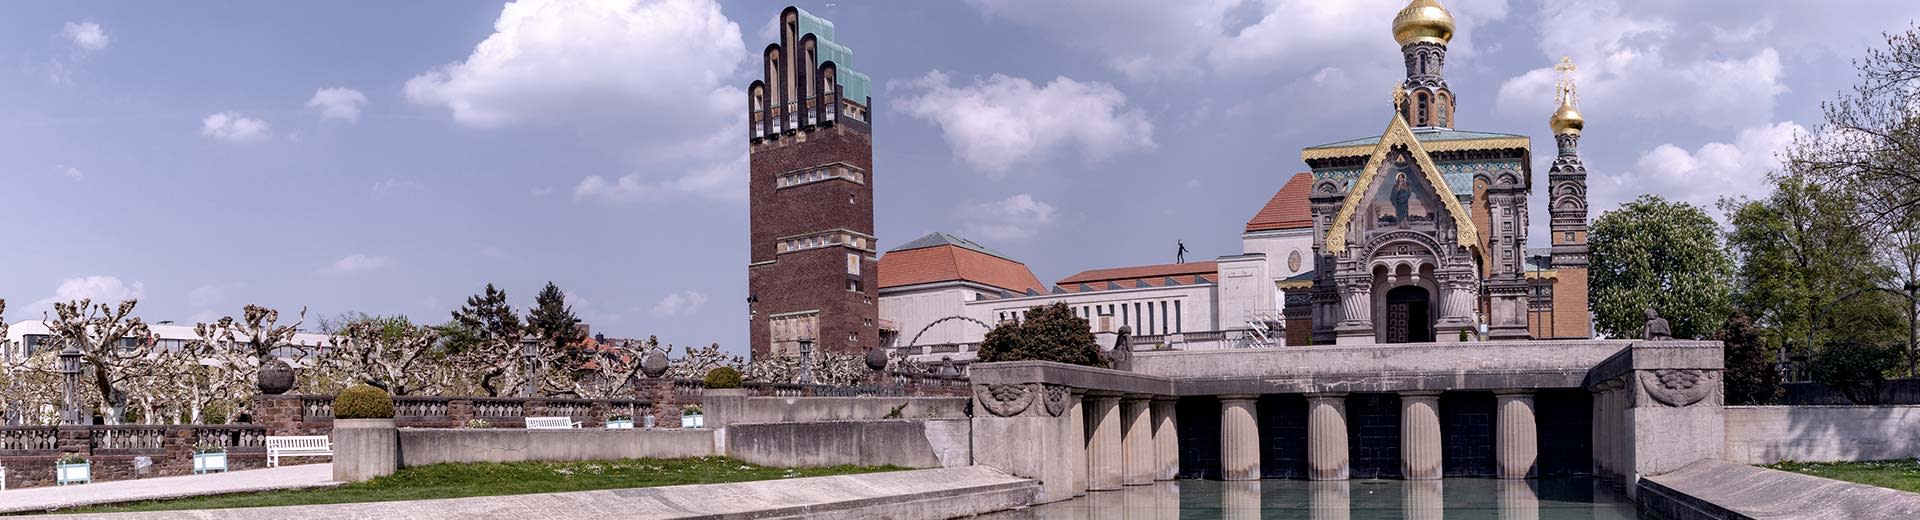 在晴朗的日子里，达姆施塔特历史悠久的教堂和建筑坐落在运河边。